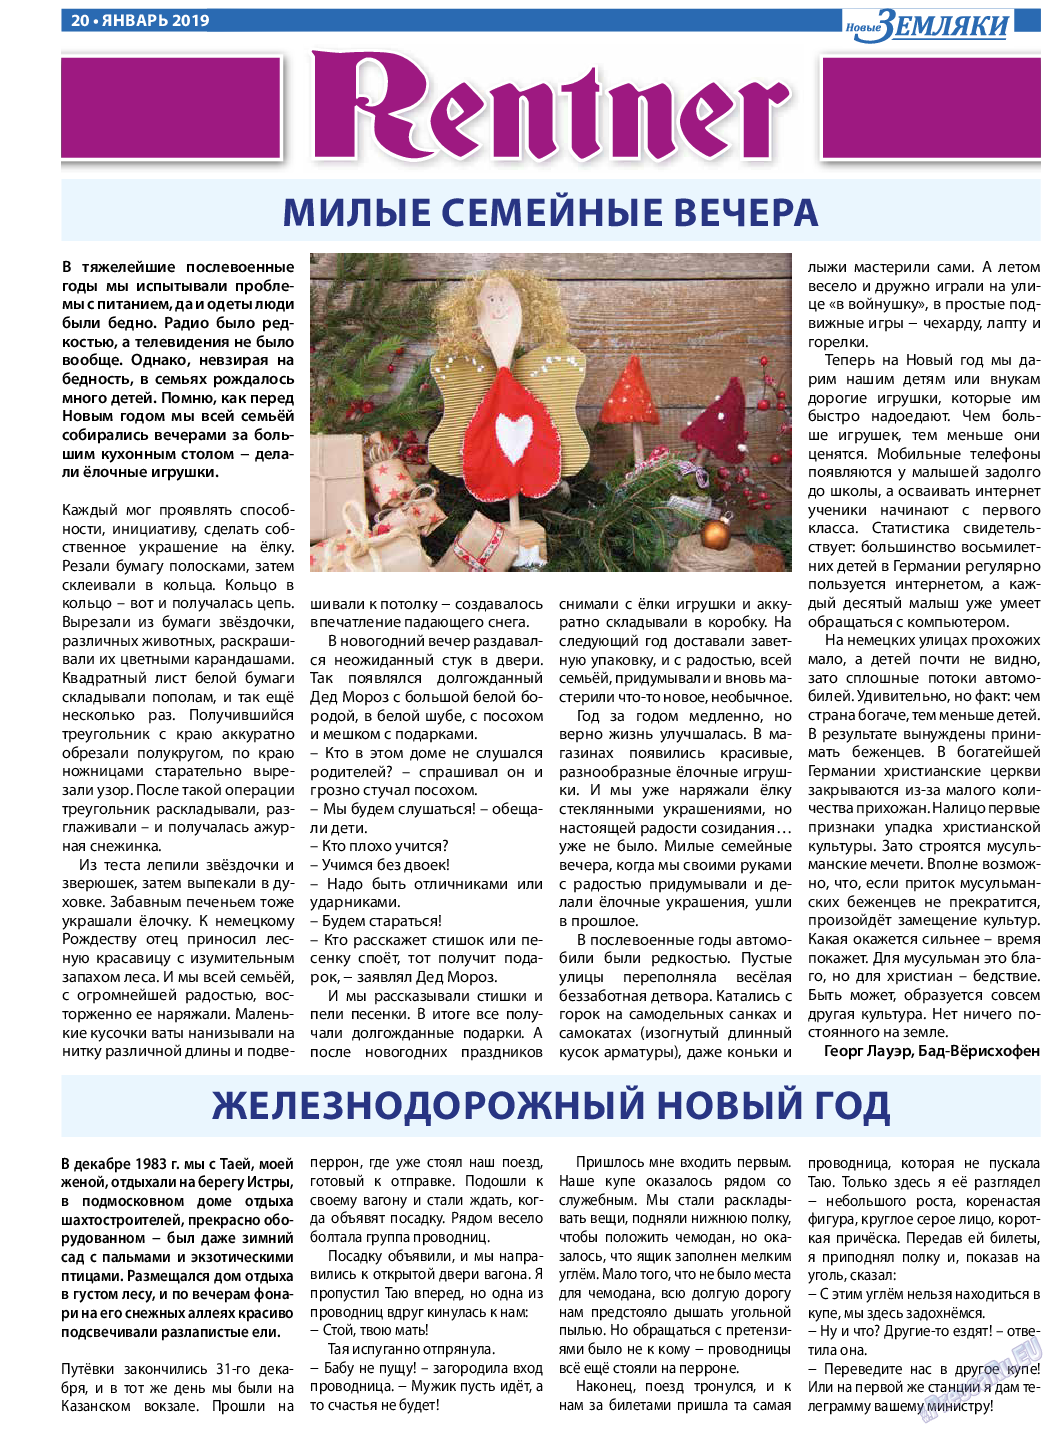 Новые Земляки, газета. 2019 №1 стр.20